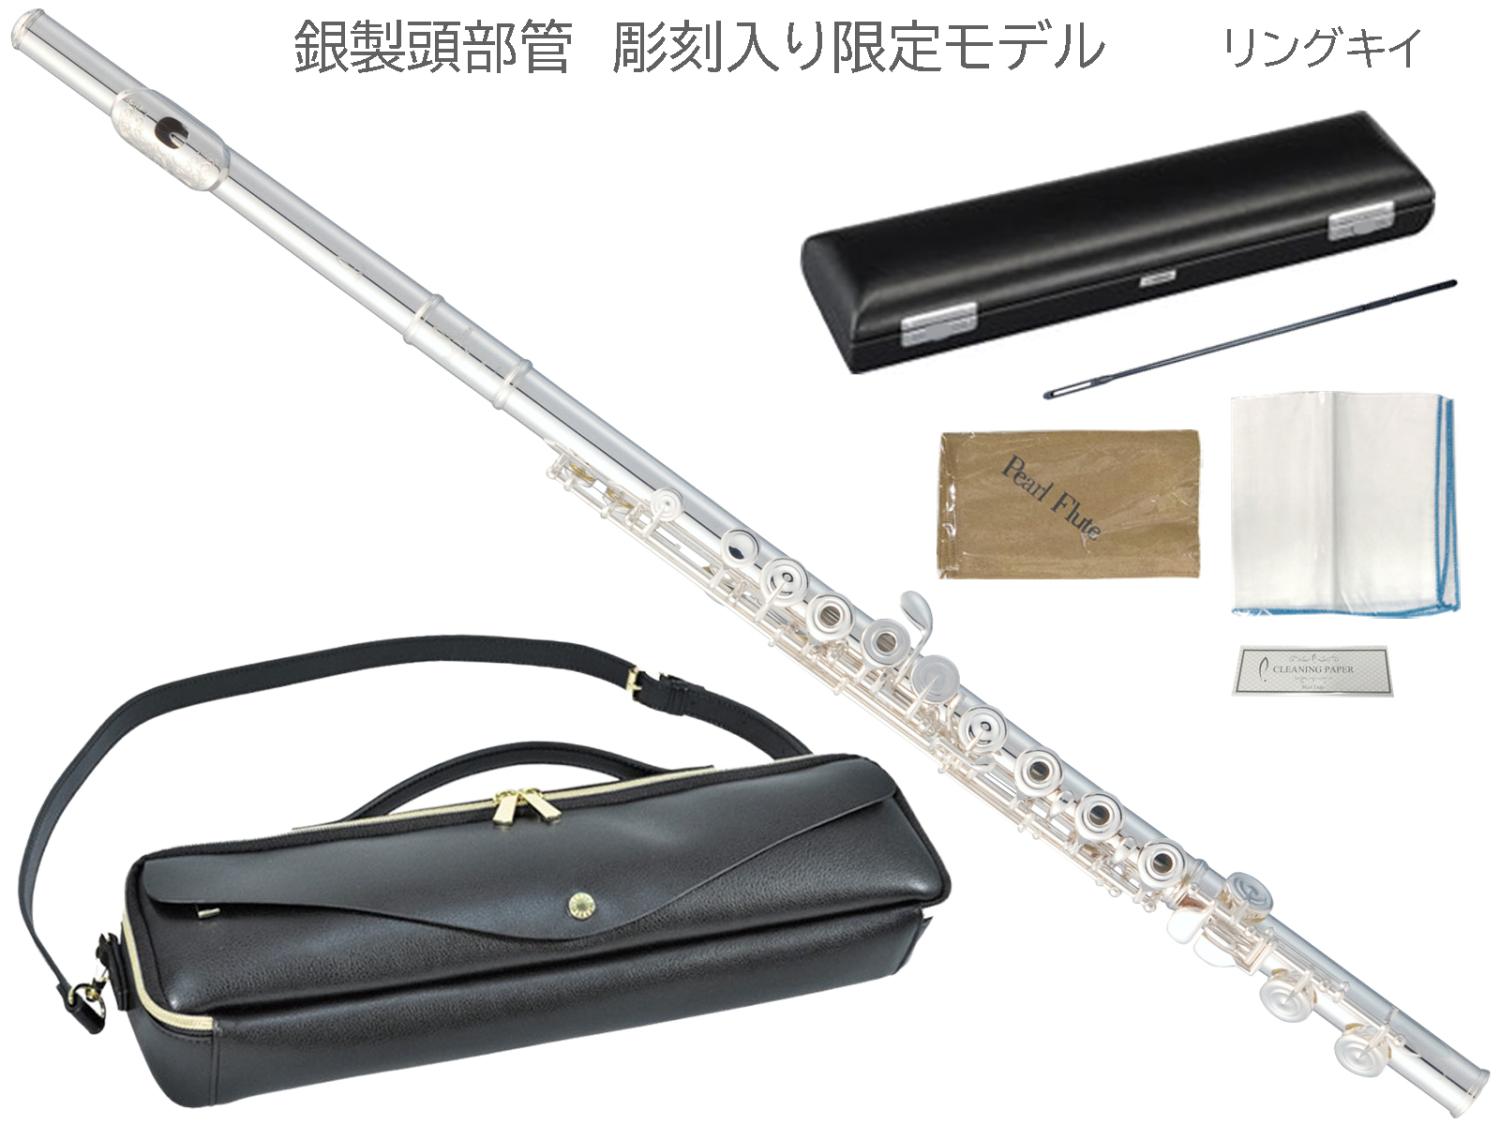 Pearl Flute ( パールフルート ) F-DP/RE-VCE1 フルート 限定 彫刻入り ...